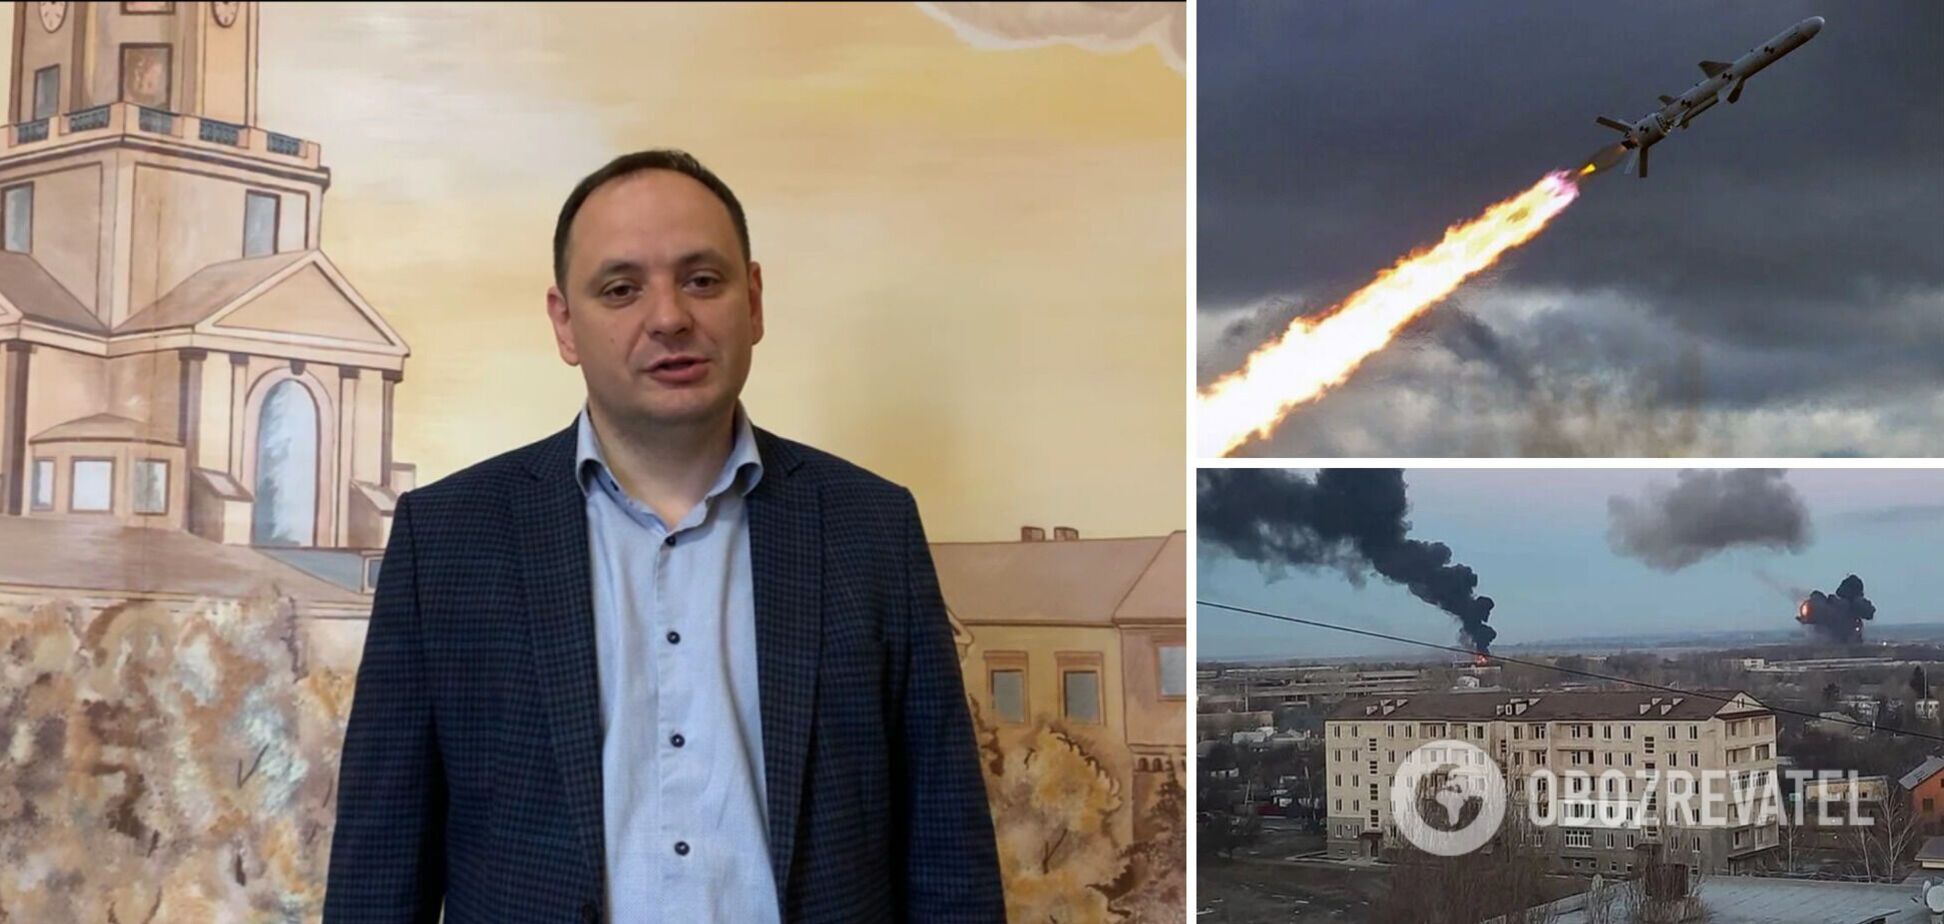 Мэр Ивано-Франковска заявил об угрозе ракетных ударов 7-9 мая: публичных мероприятий не будет